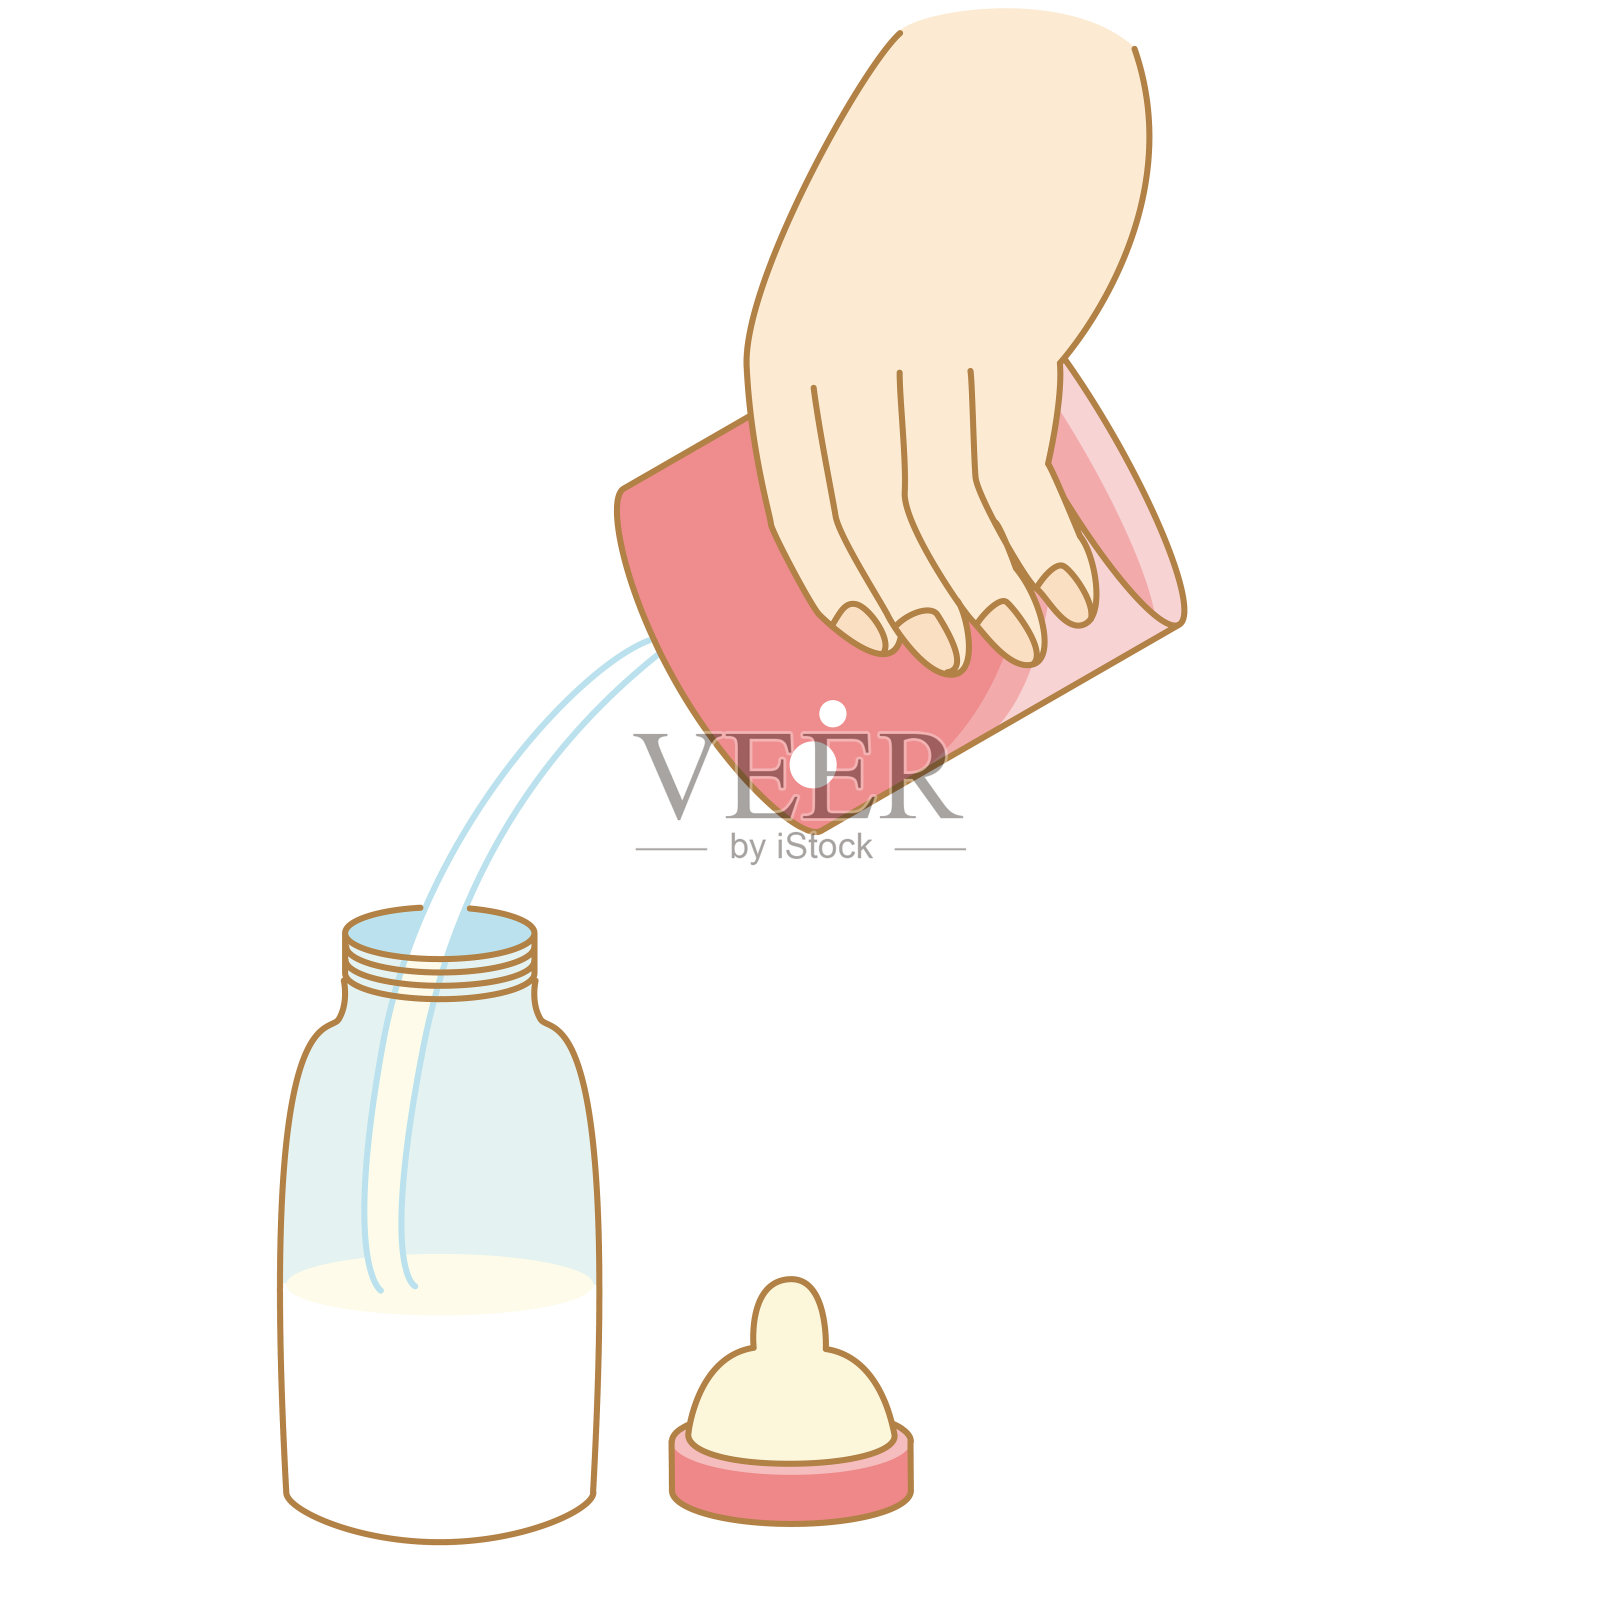 方便的液体婴儿奶的插图设计元素图片